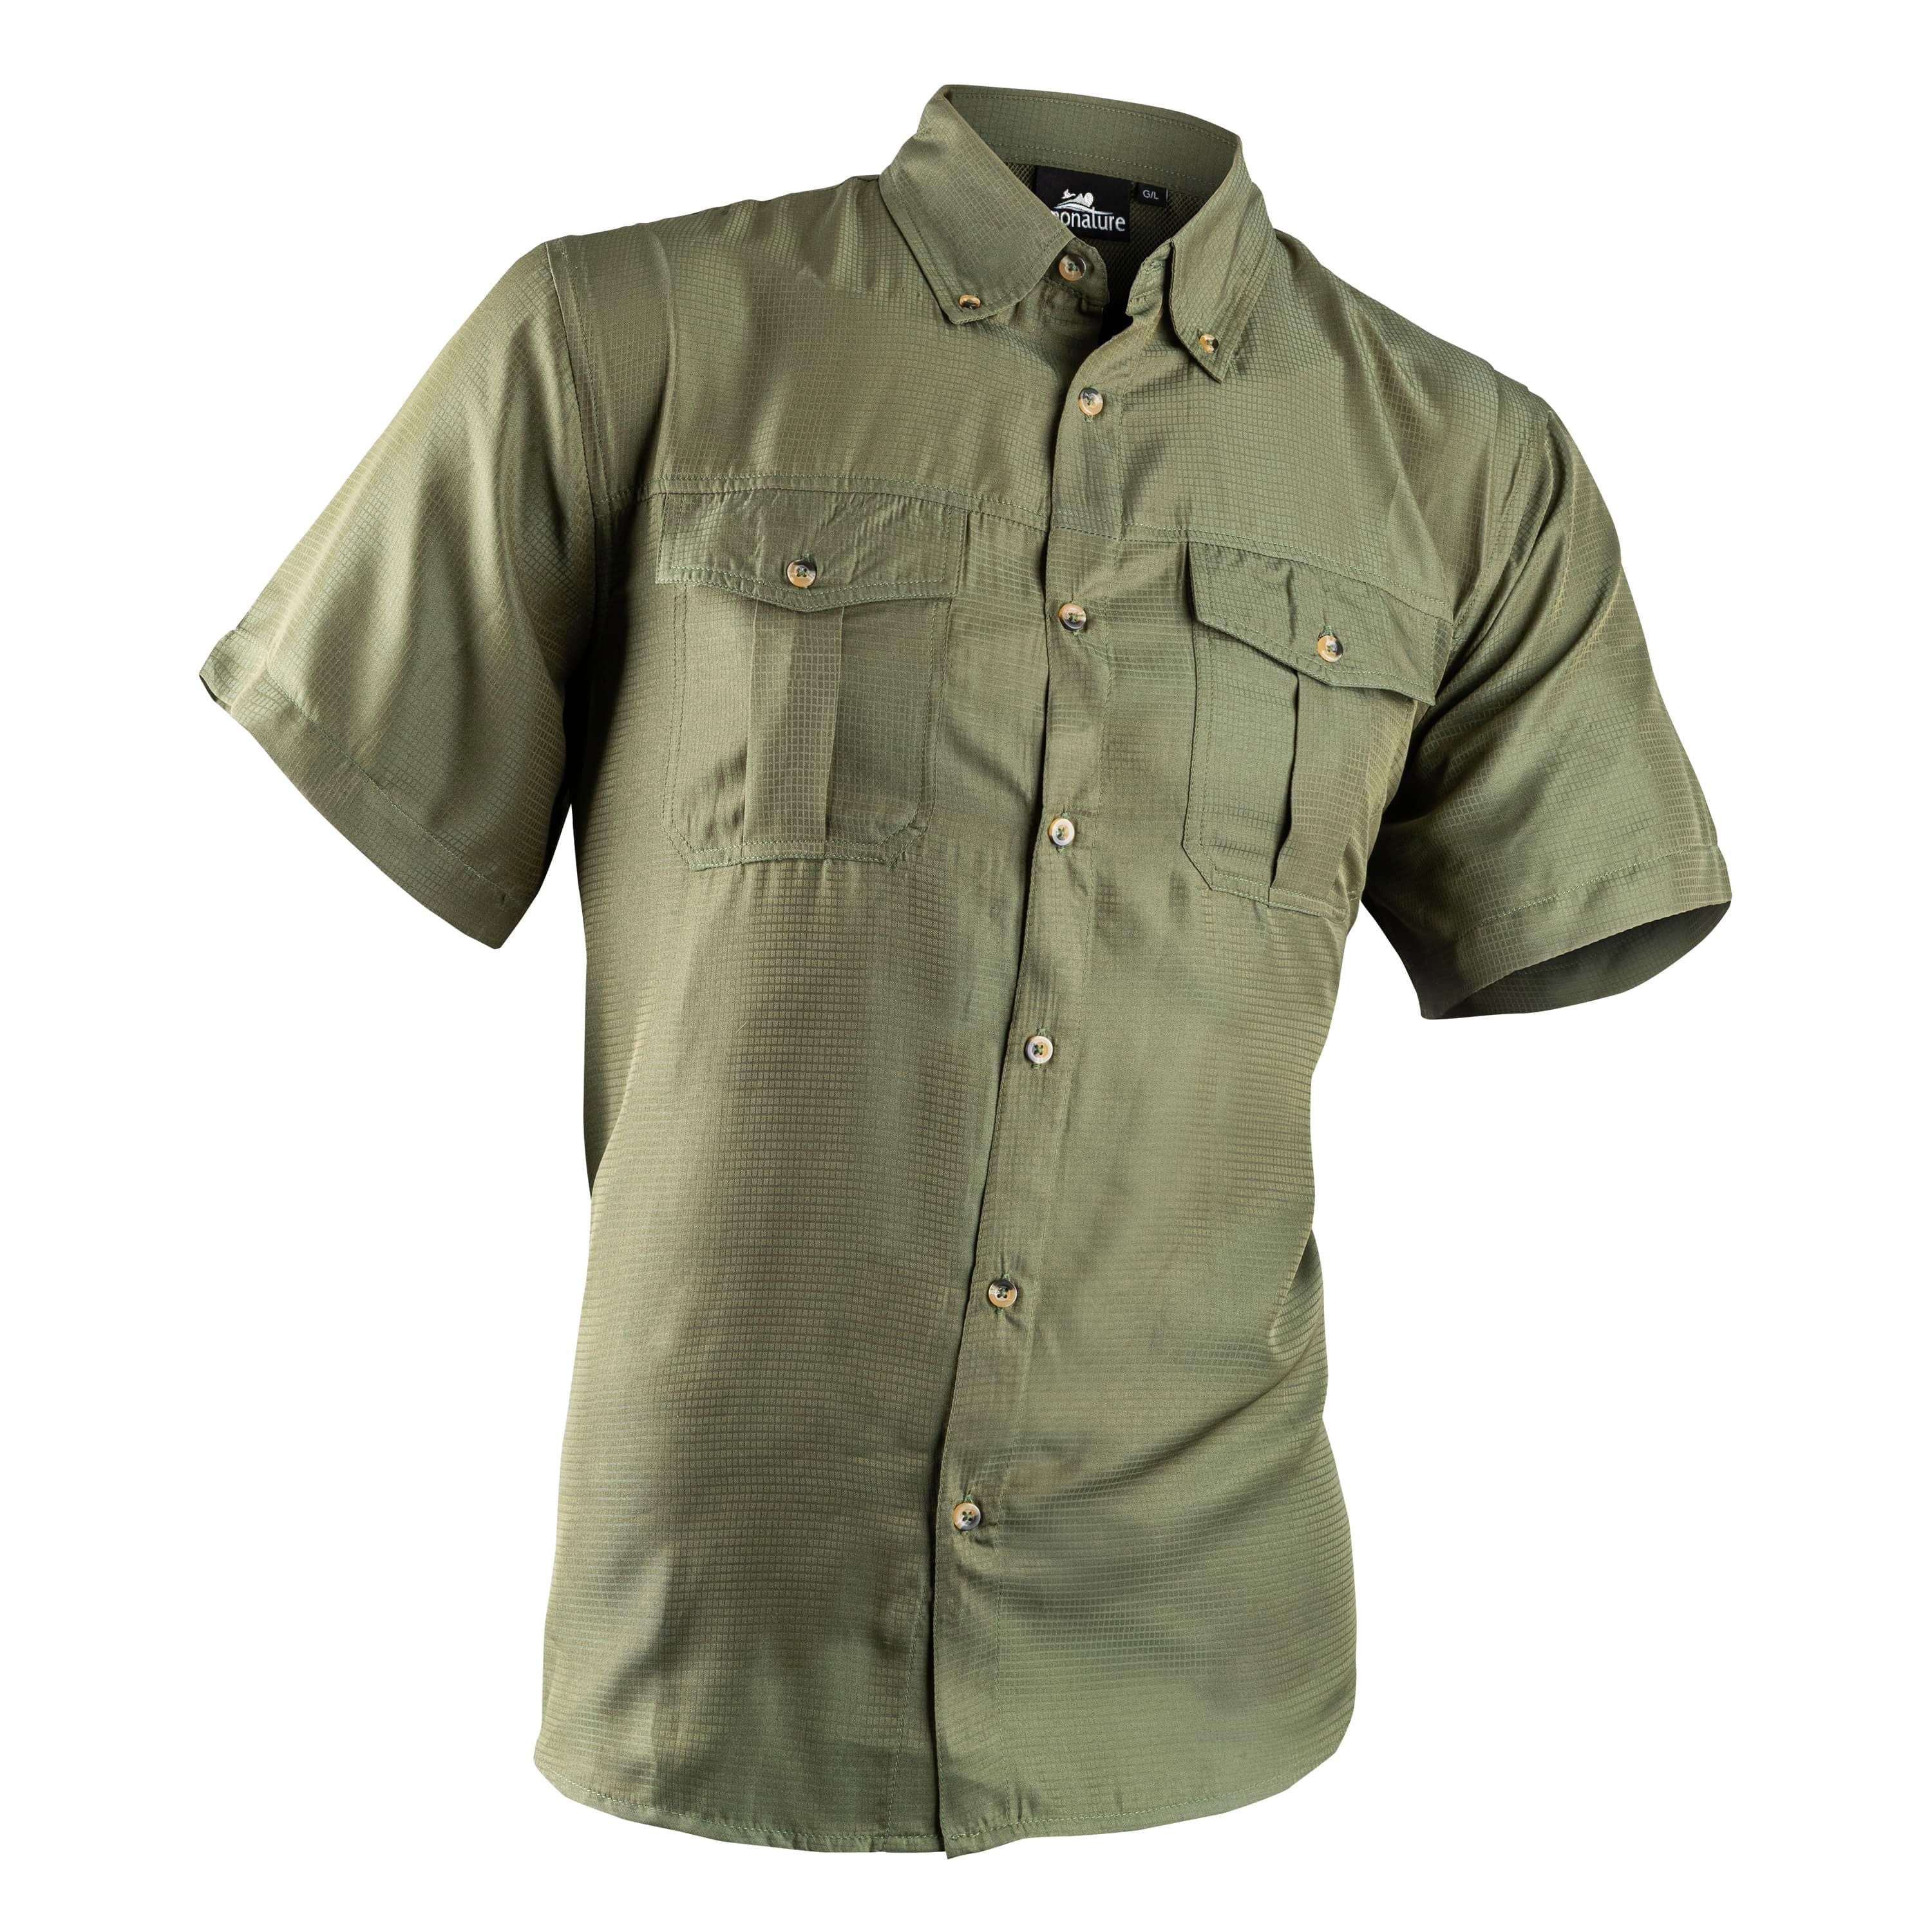 Chemise pour la pêche à manches courtes "Breathe" - Homme||"Breathe" Short sleeve fishing shirt - Men's